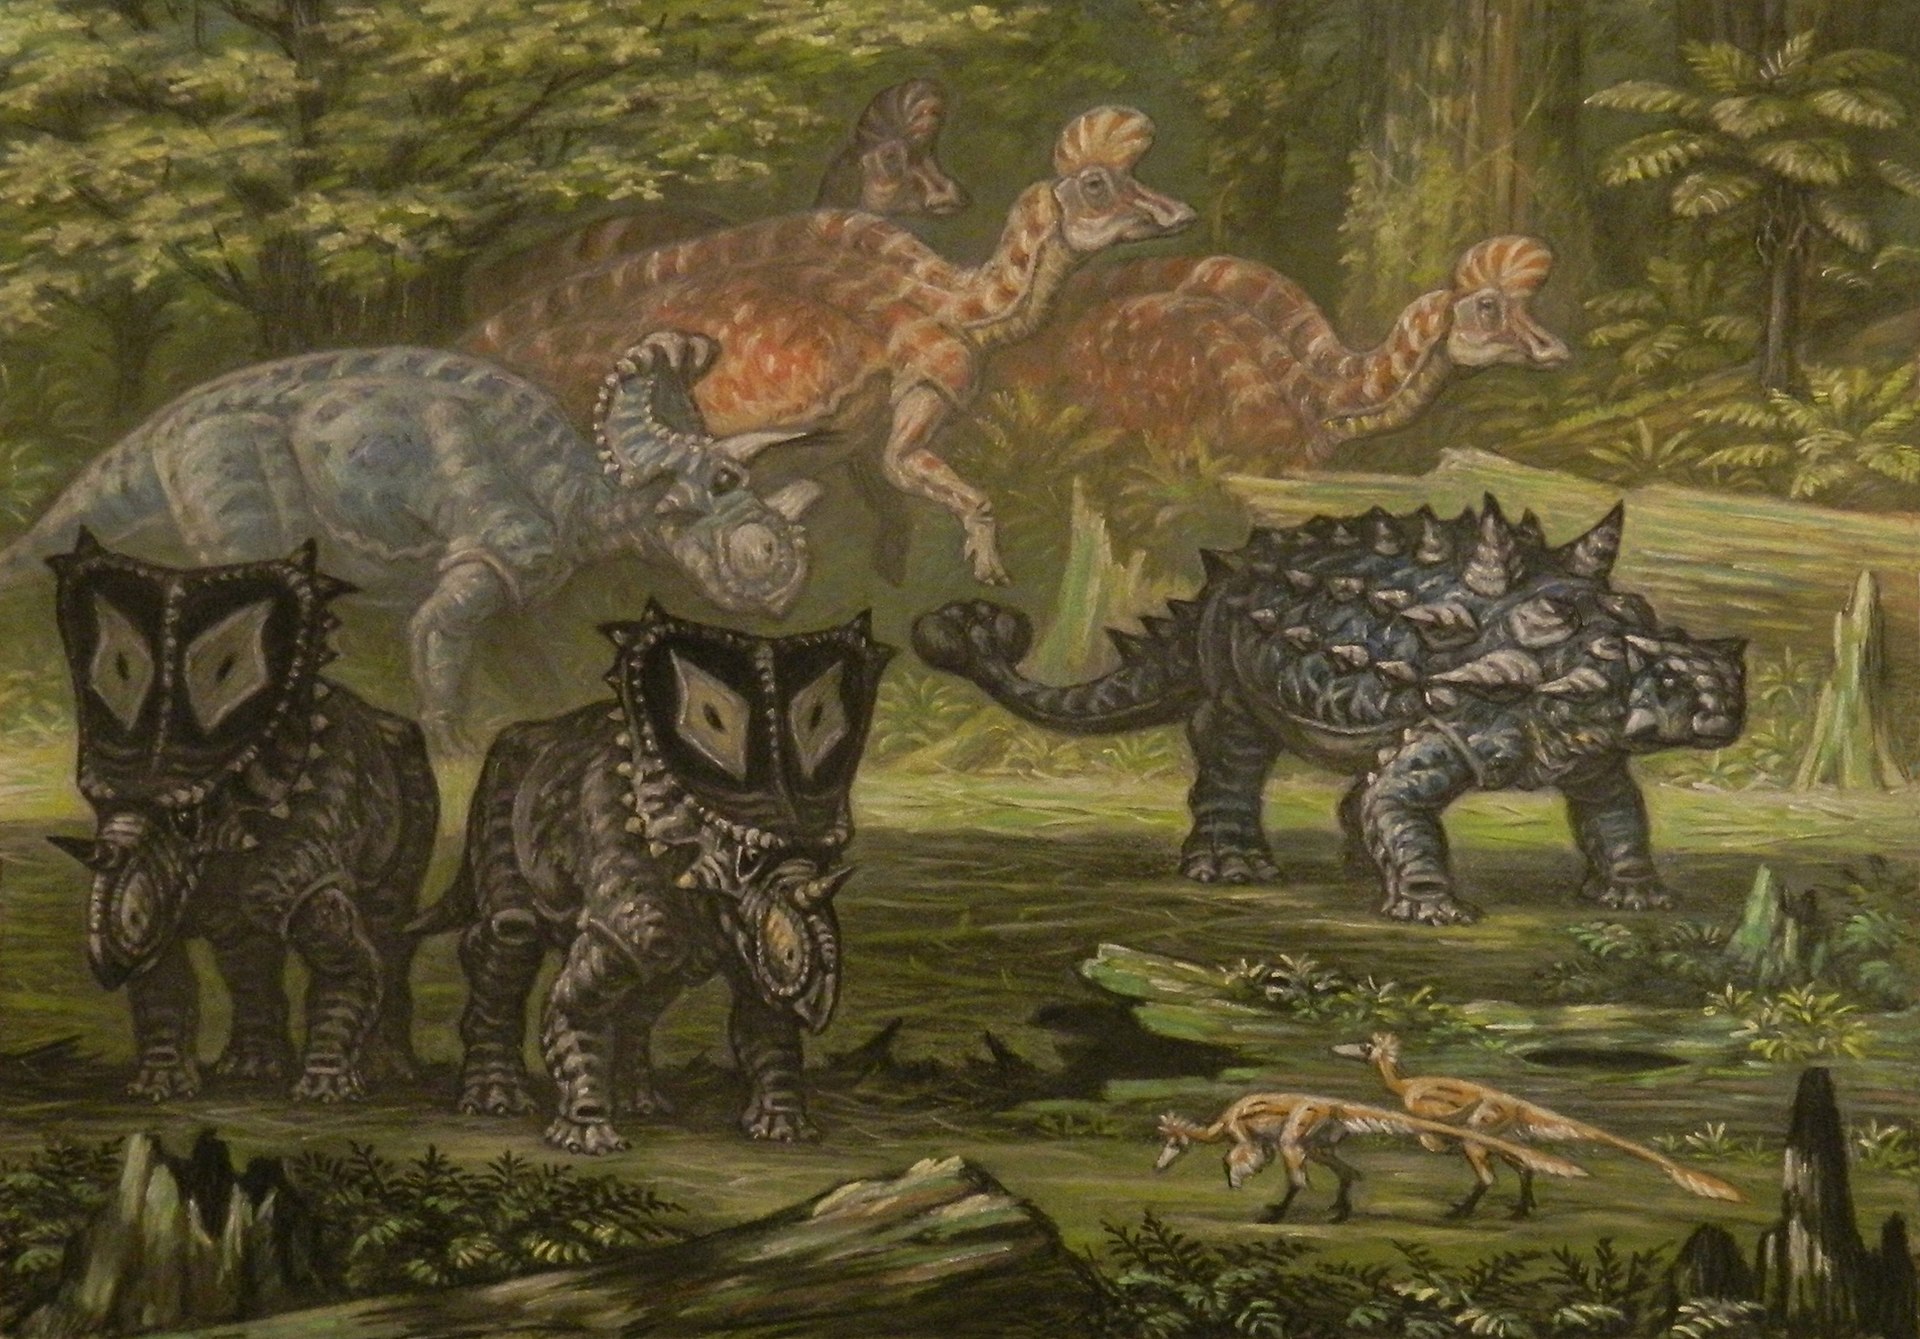 Idealizovaný ekosystém geologického souvrství Oldman se skupinkou korytosaurů, přecházejících v pozadí obrazu. V popředí jsou pak vlevo rohatí dinosauři rodů Wendiceratops (dále) a Chasmosaurus (blíže), vpravo ankylosaurid Scolosaurus a zcela vpředu 